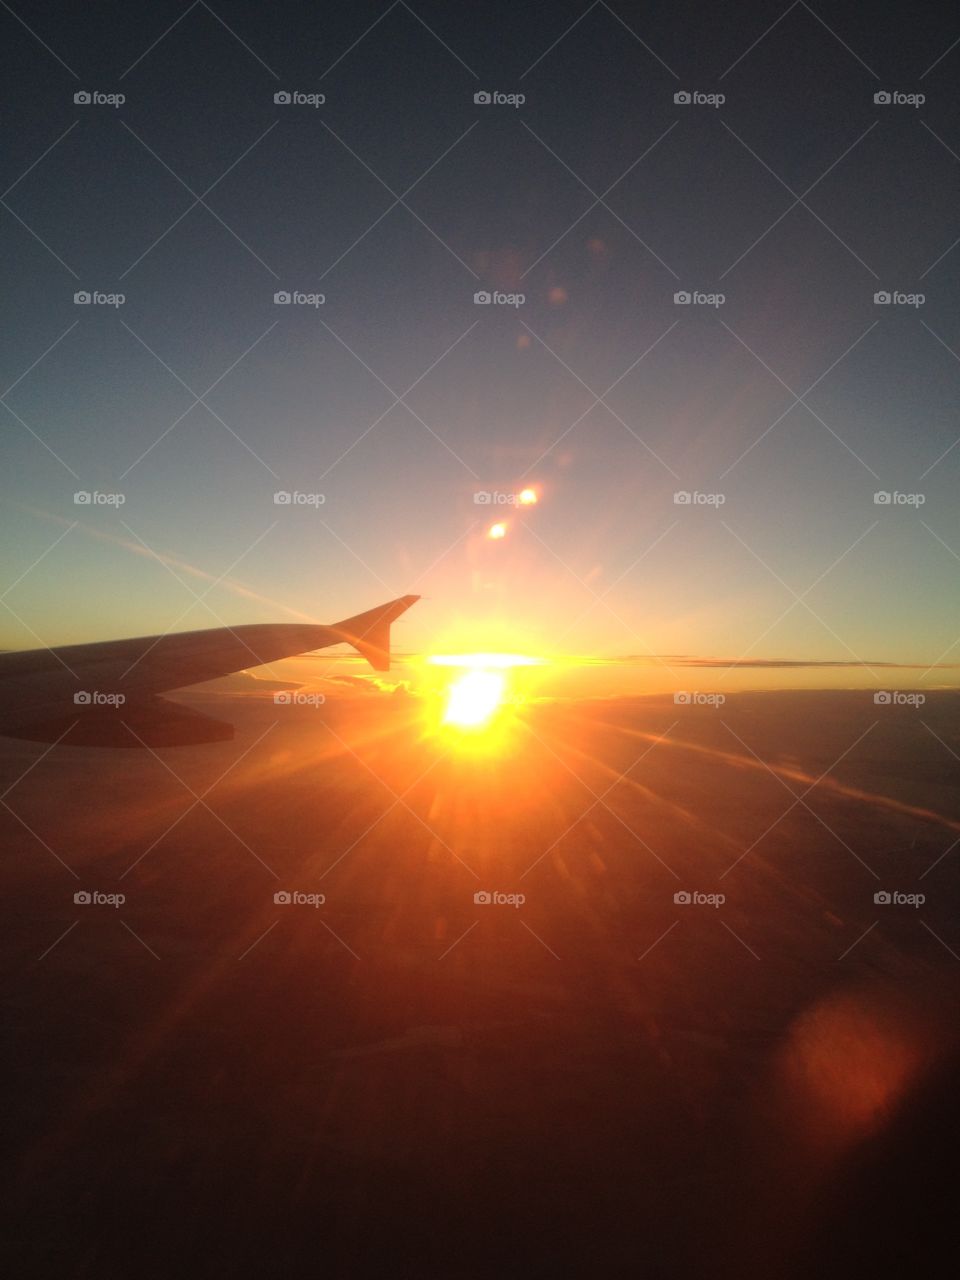 Sunrise while flying